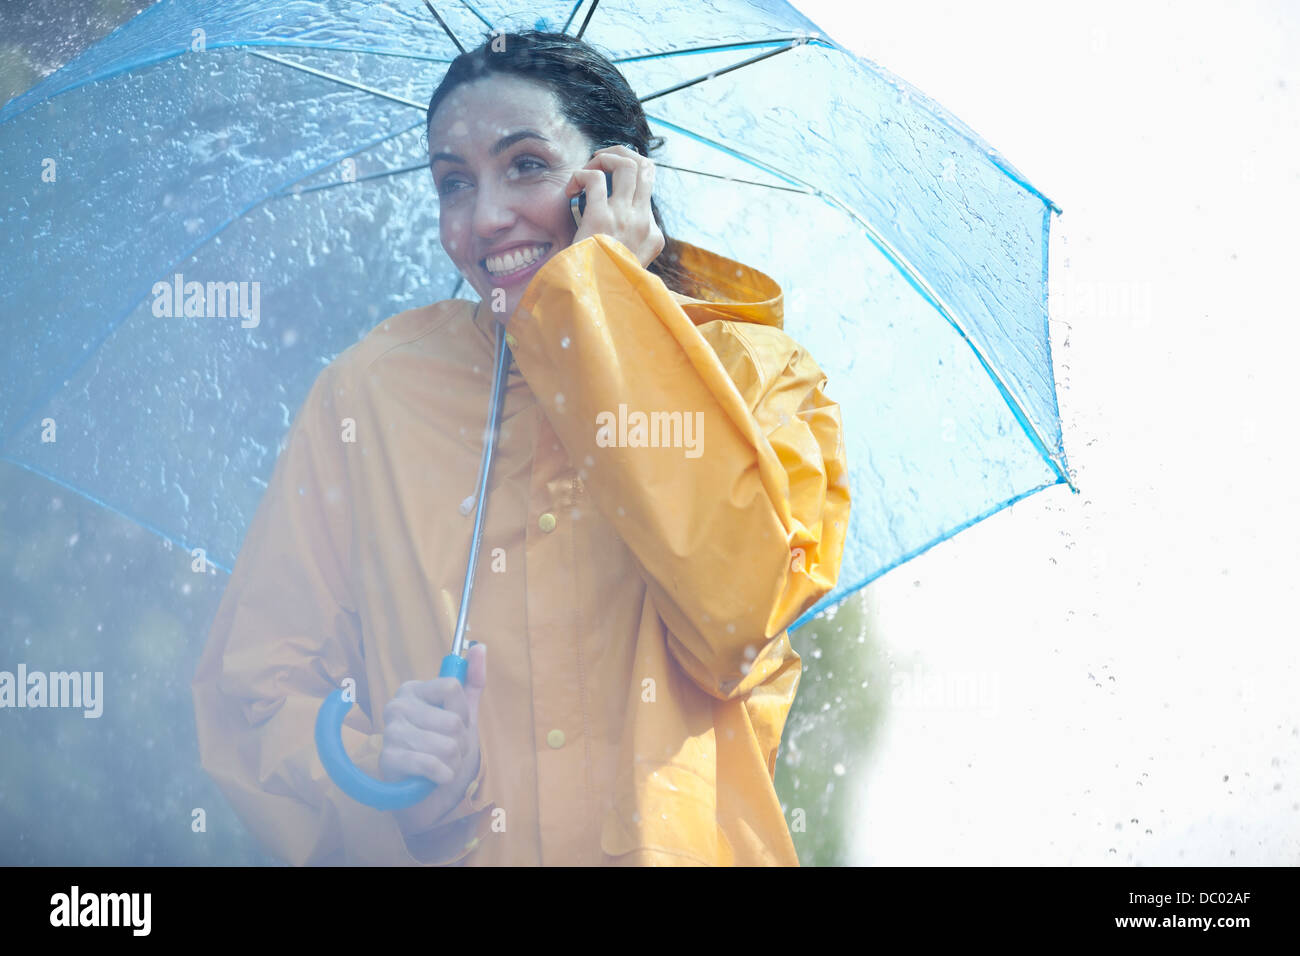 Glückliche Frau am Handy unter Dach im Regen Stockfoto